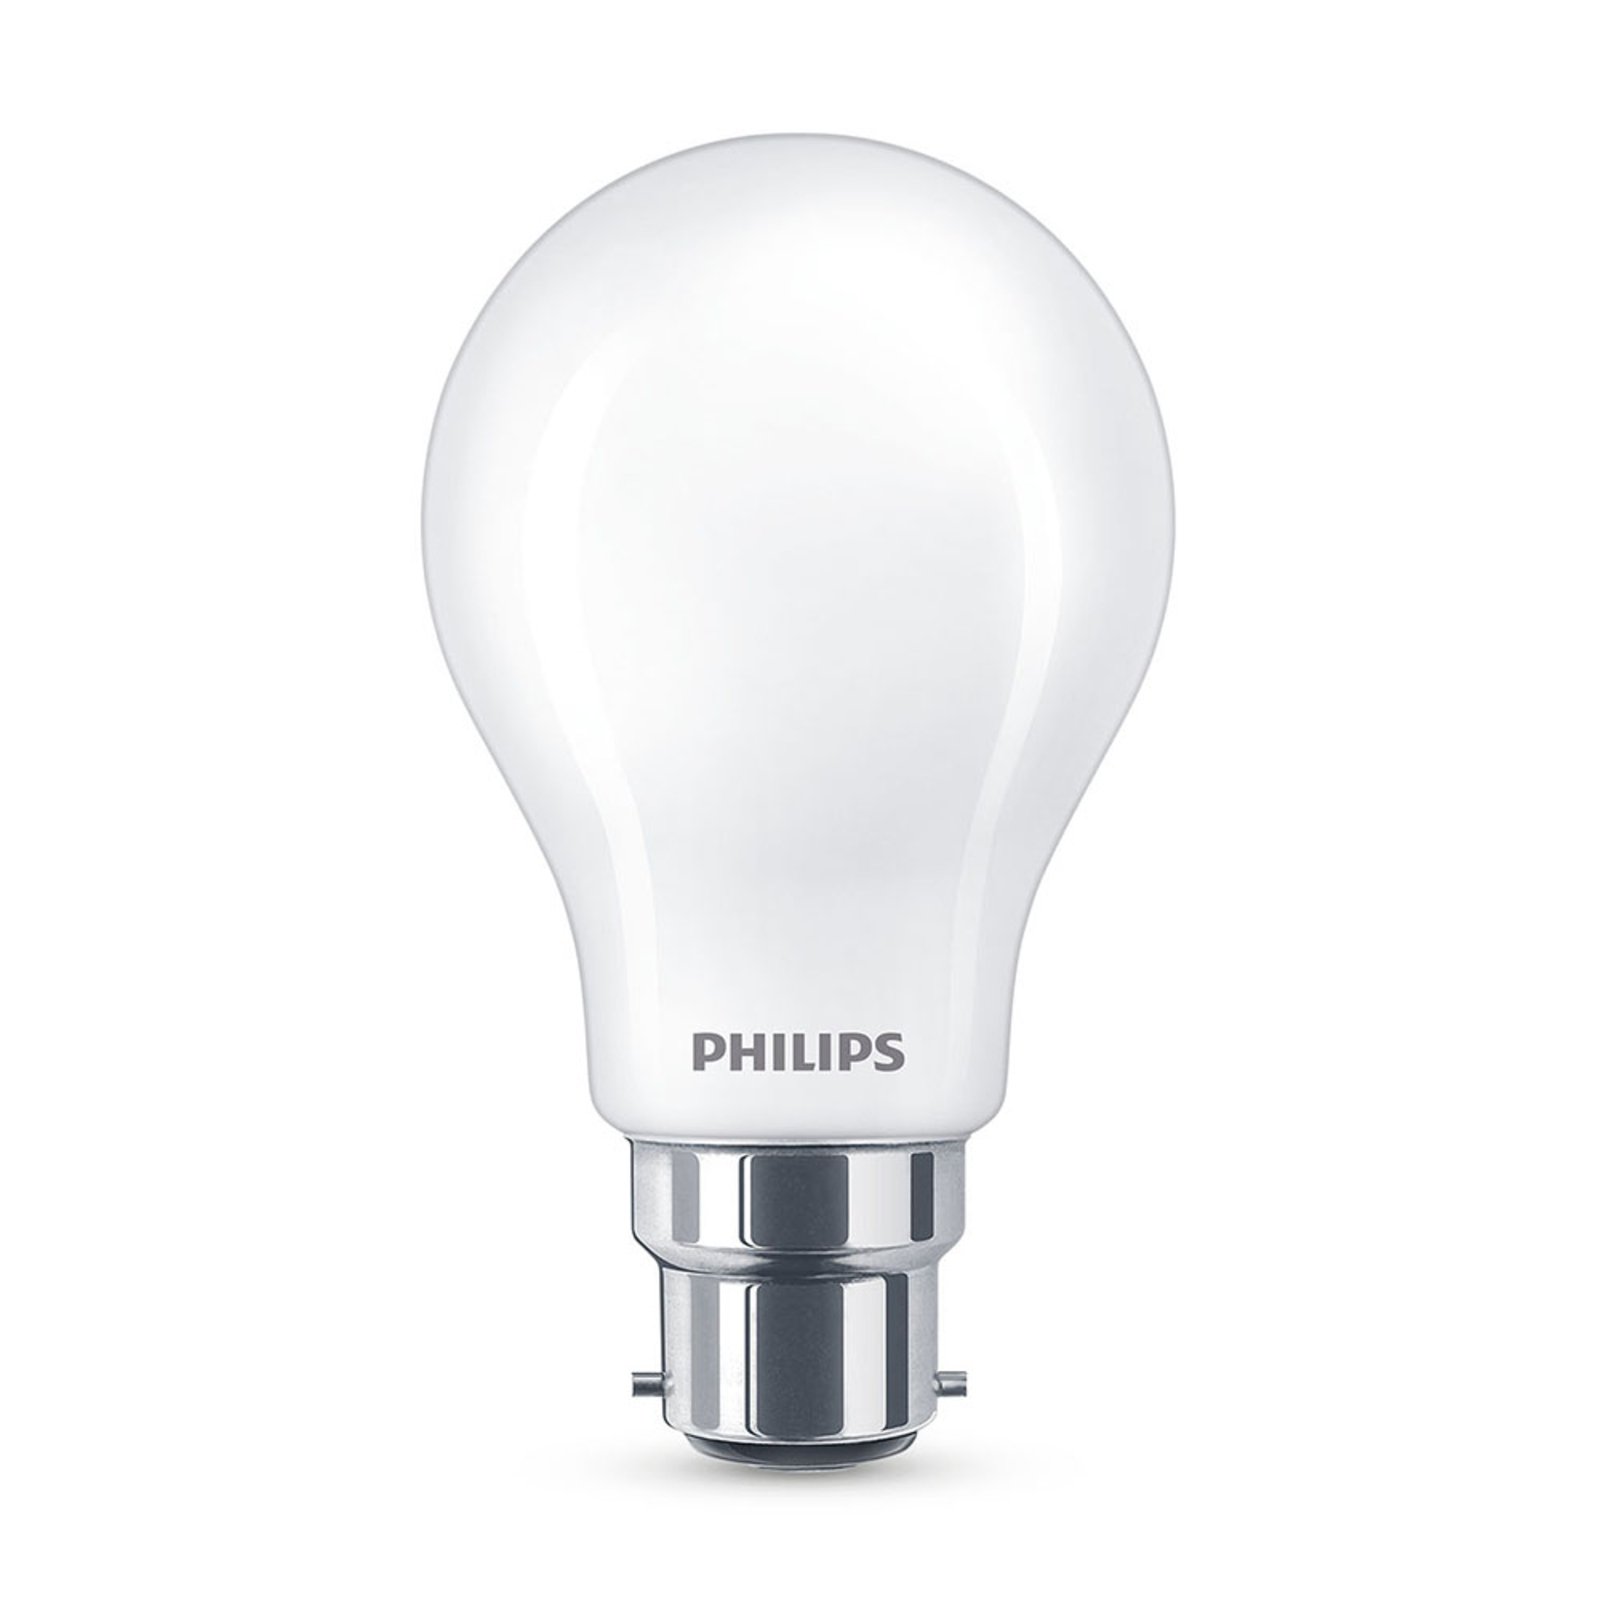 Philips bombilla LED Classic B22 A60 7W 2700K mate